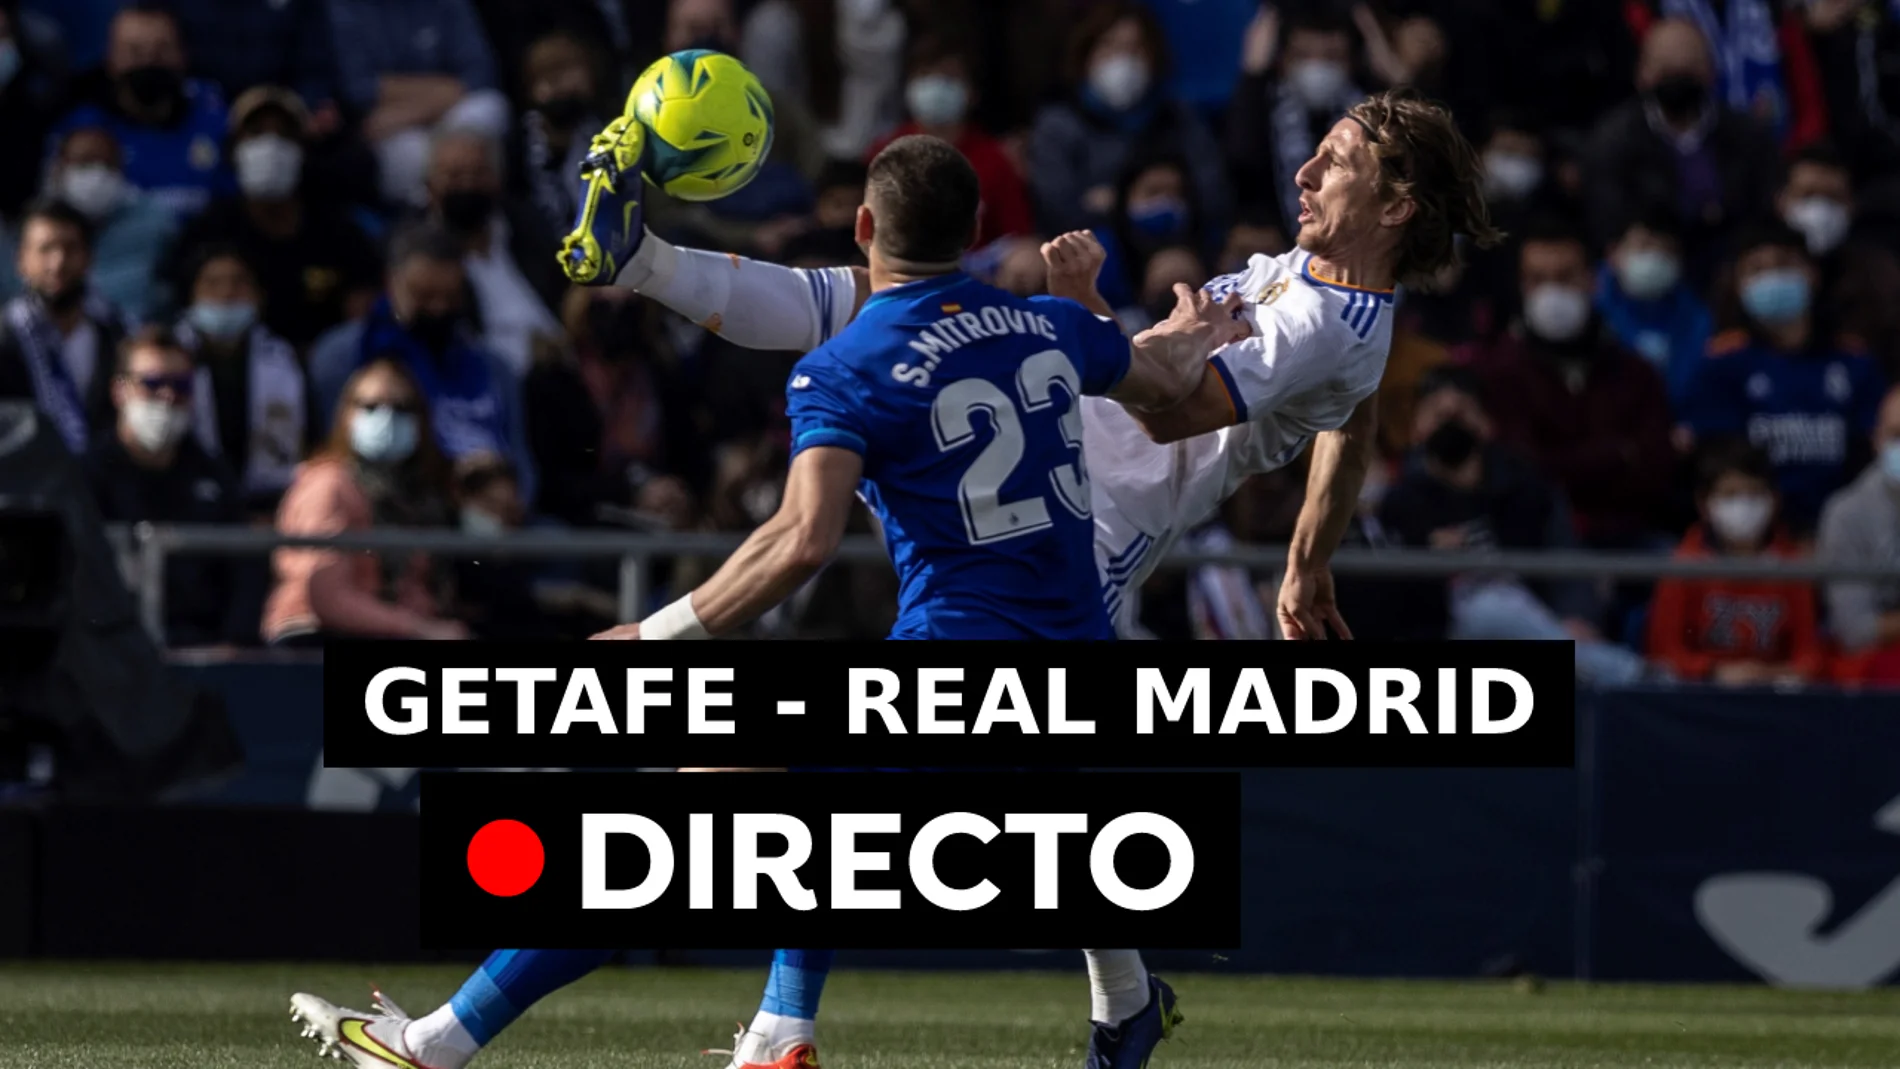 Getafe - Real Madrid, resultado y goles de hoy en directo